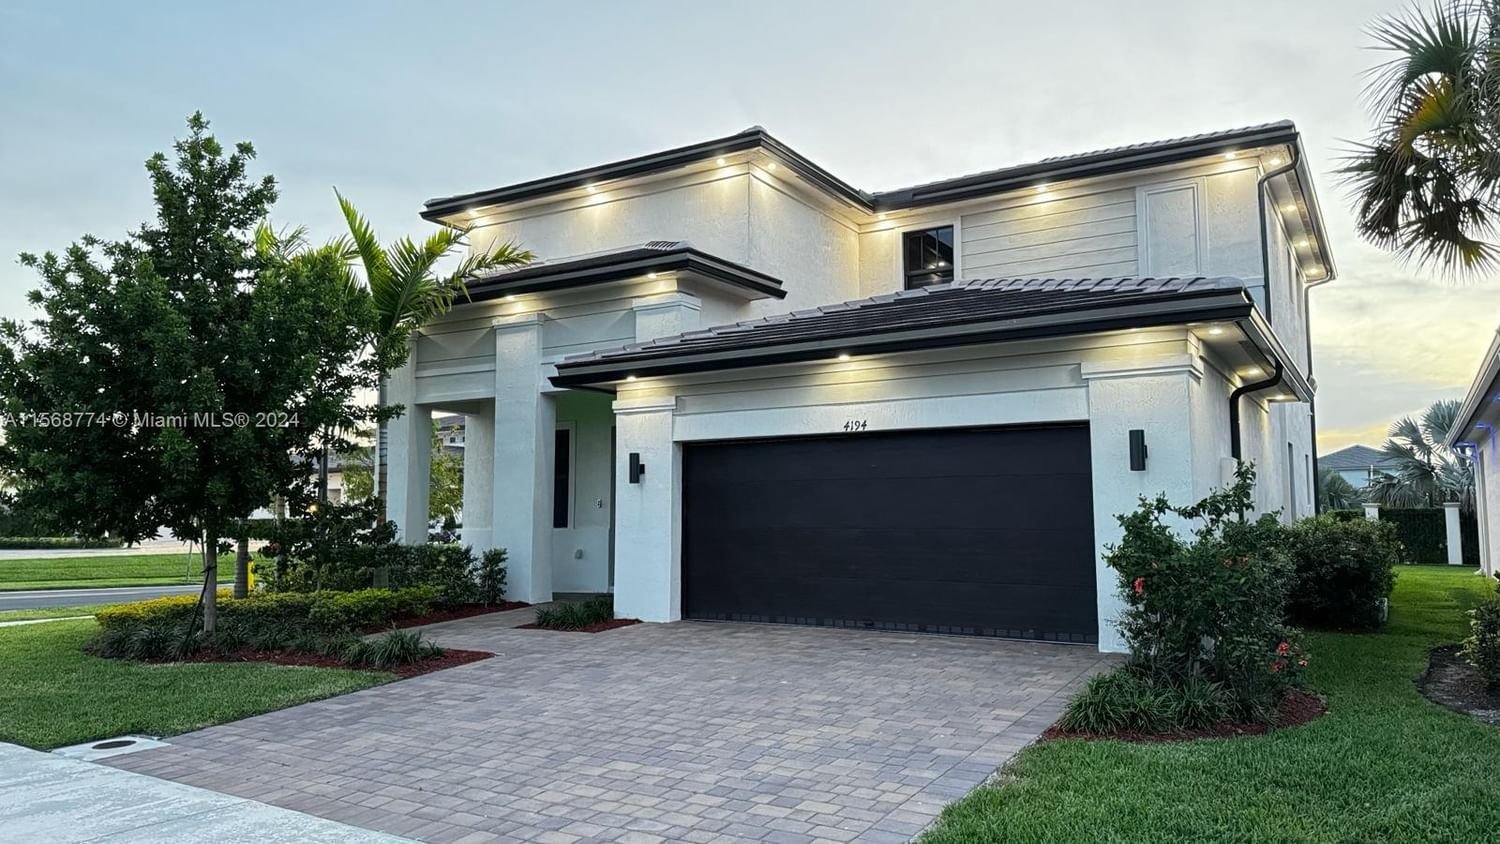 Real estate property located at 4194 175th Ter, Broward County, TUSCAN ISLES MARBELLA, Miramar, FL